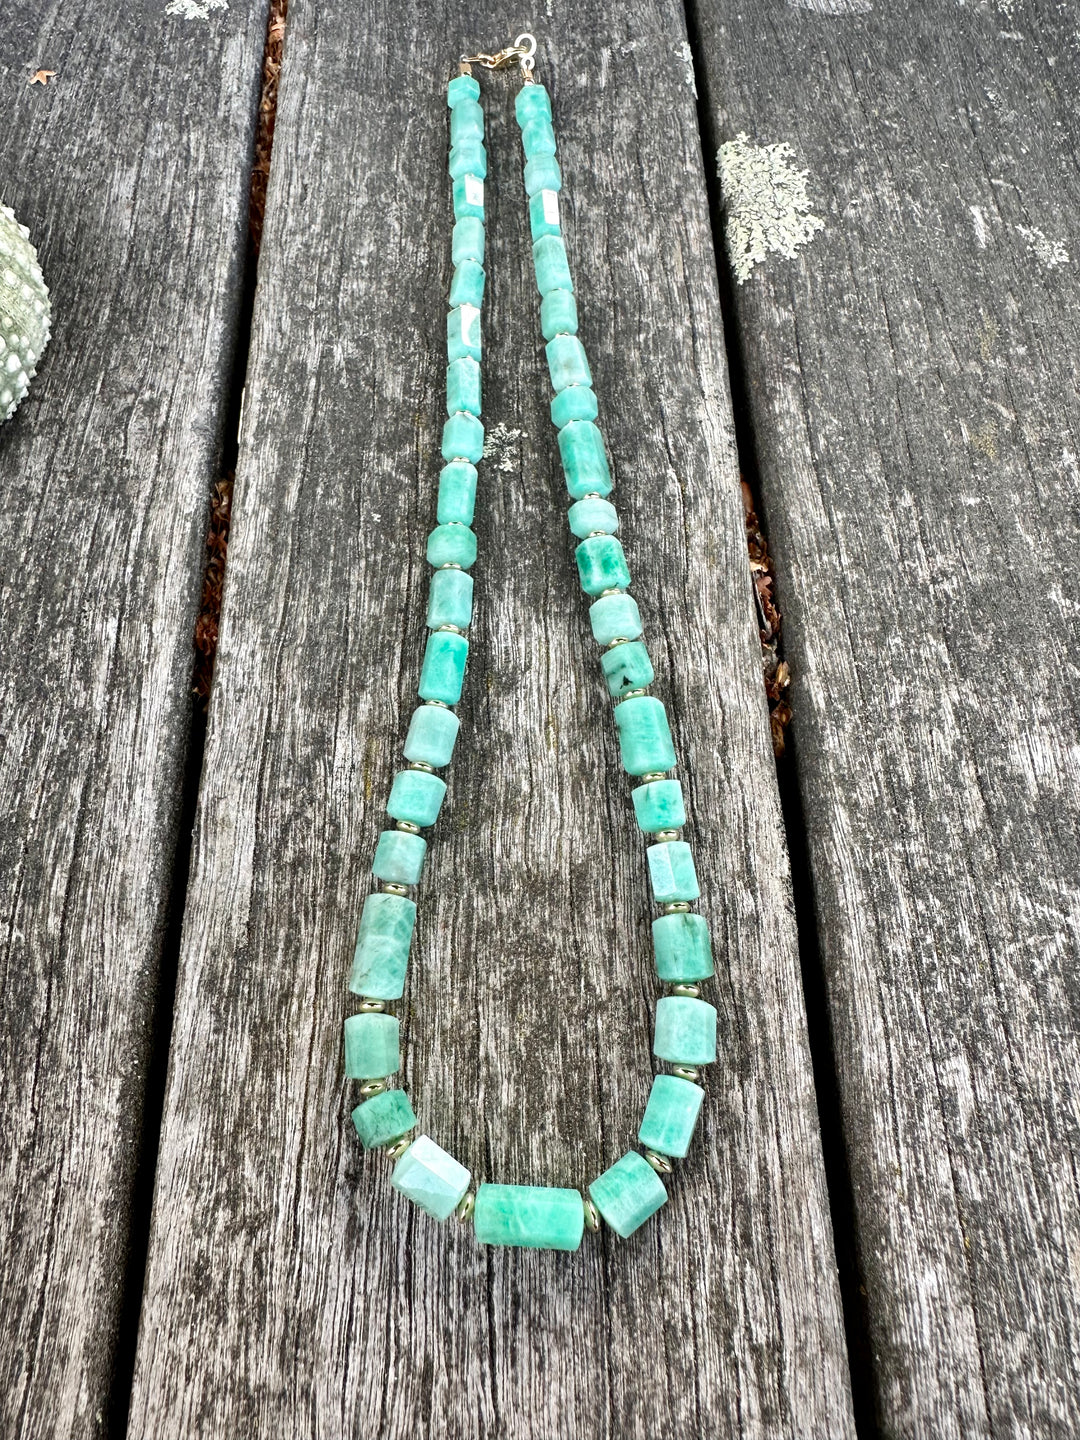 Brazilian emerald necklace